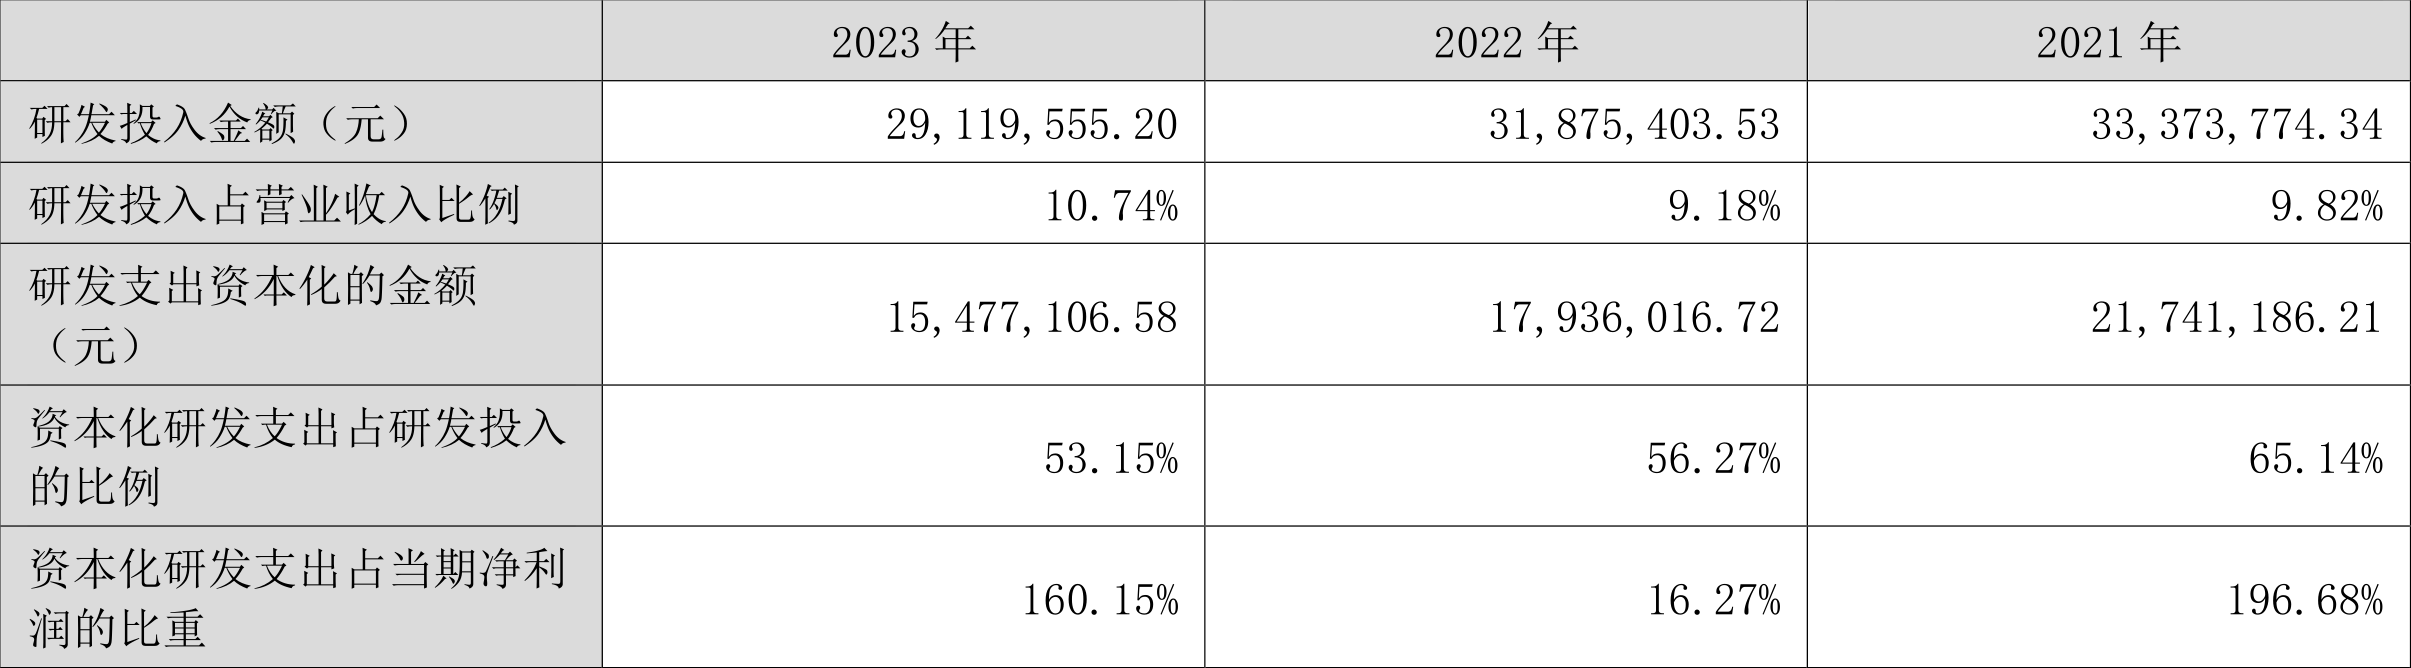 创业黑马：2023年盈利966.39万元 拟10派0.05元